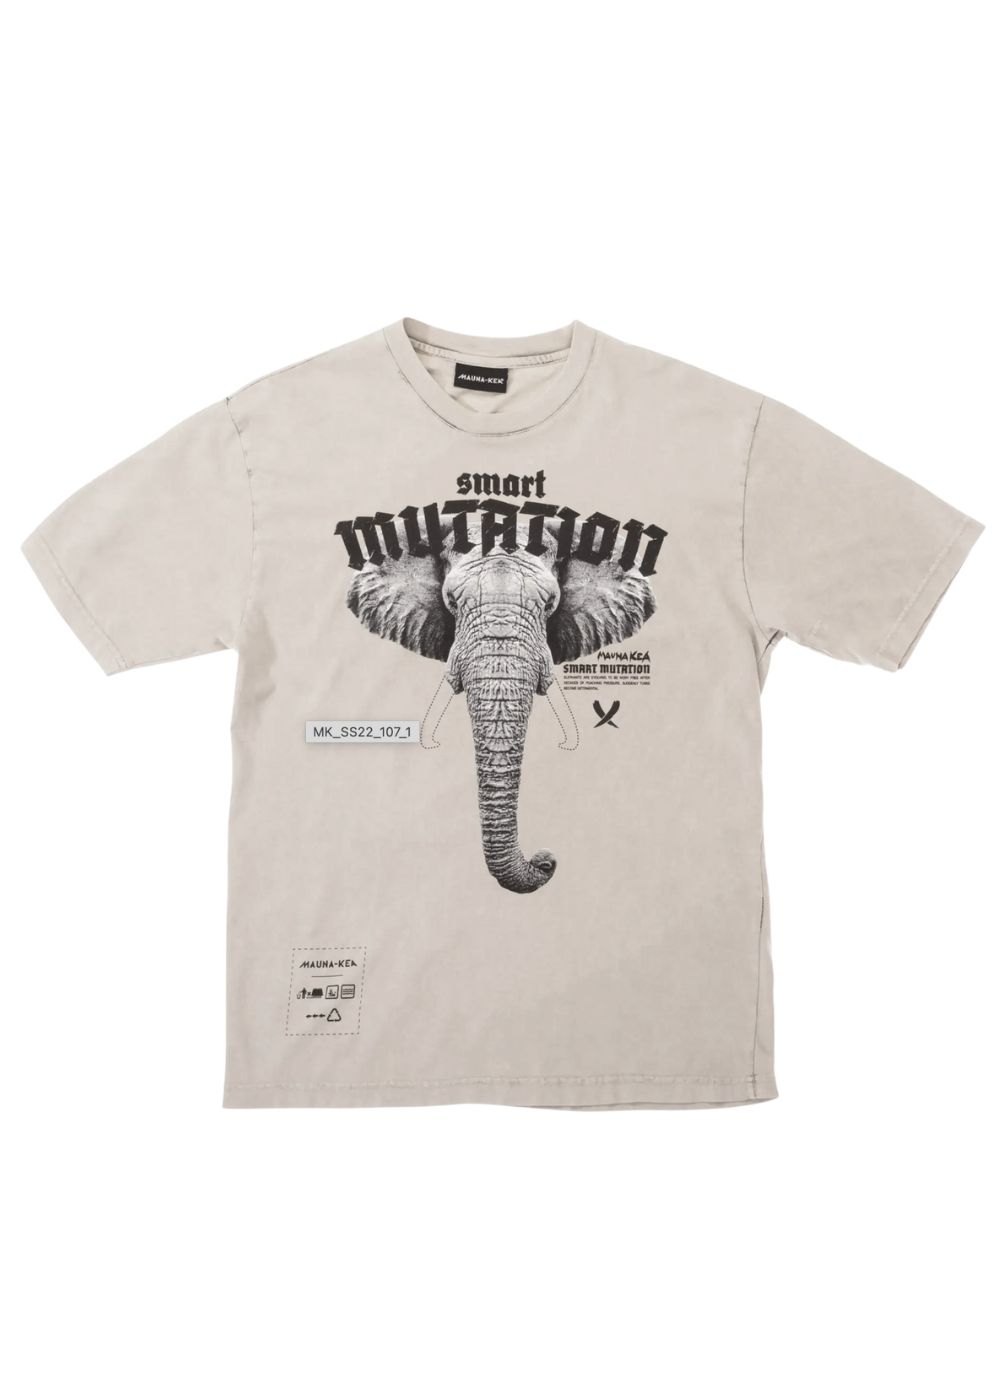 Featured image for “Mauna-Kea T-shirt Elephant”